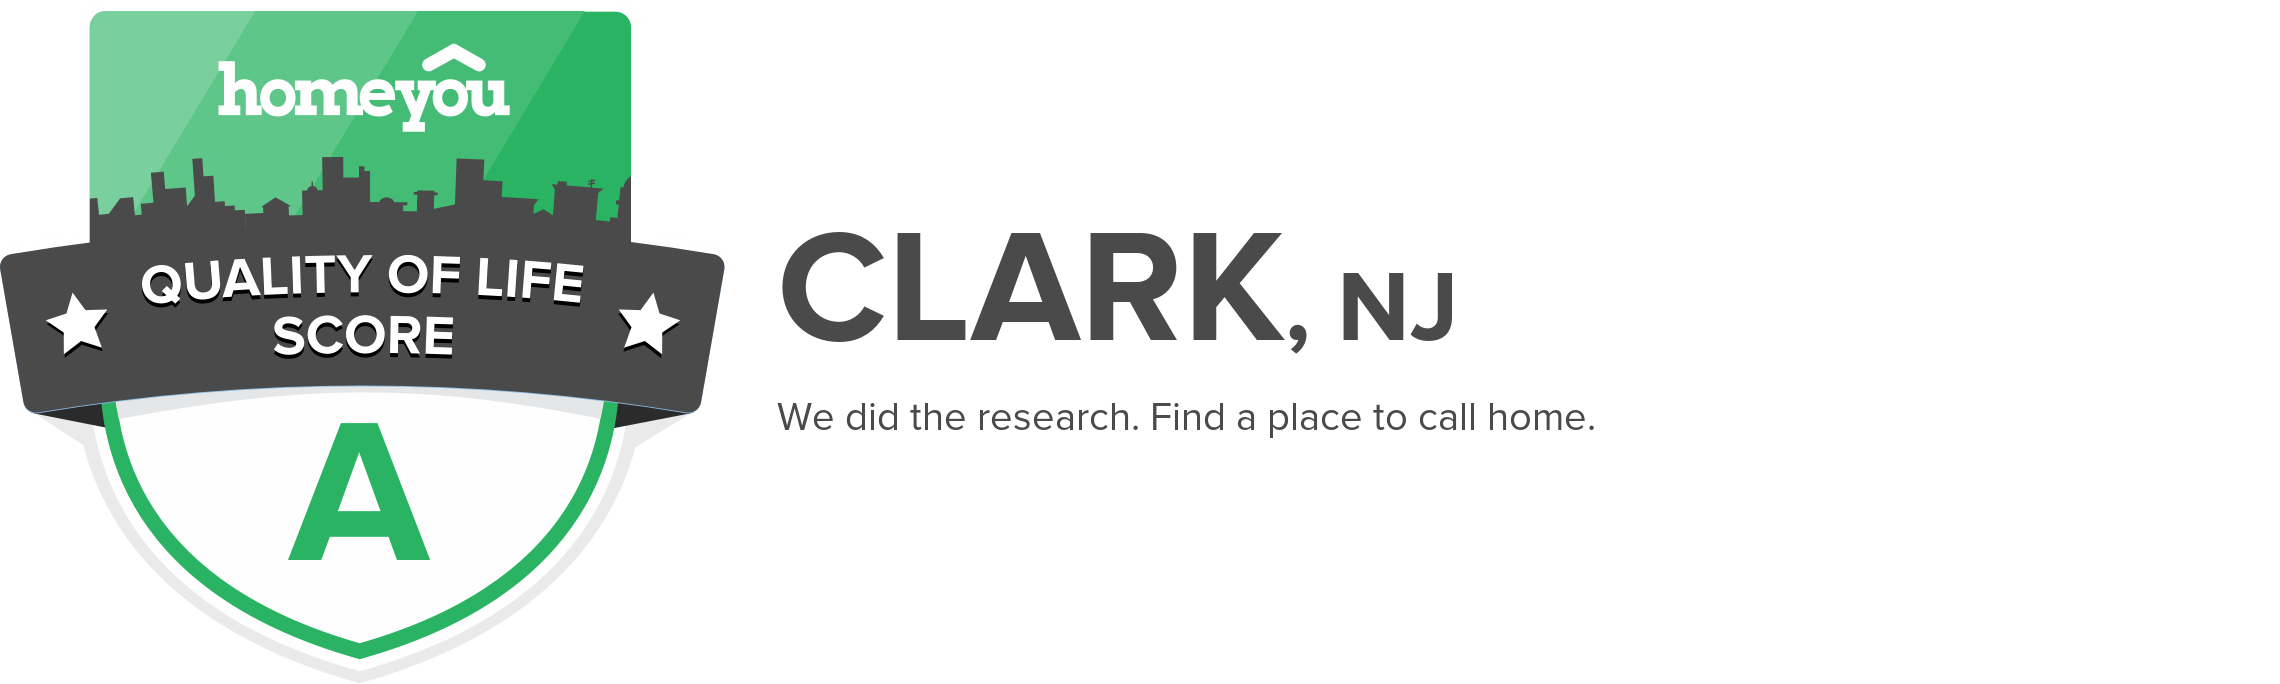 Clark, NJ